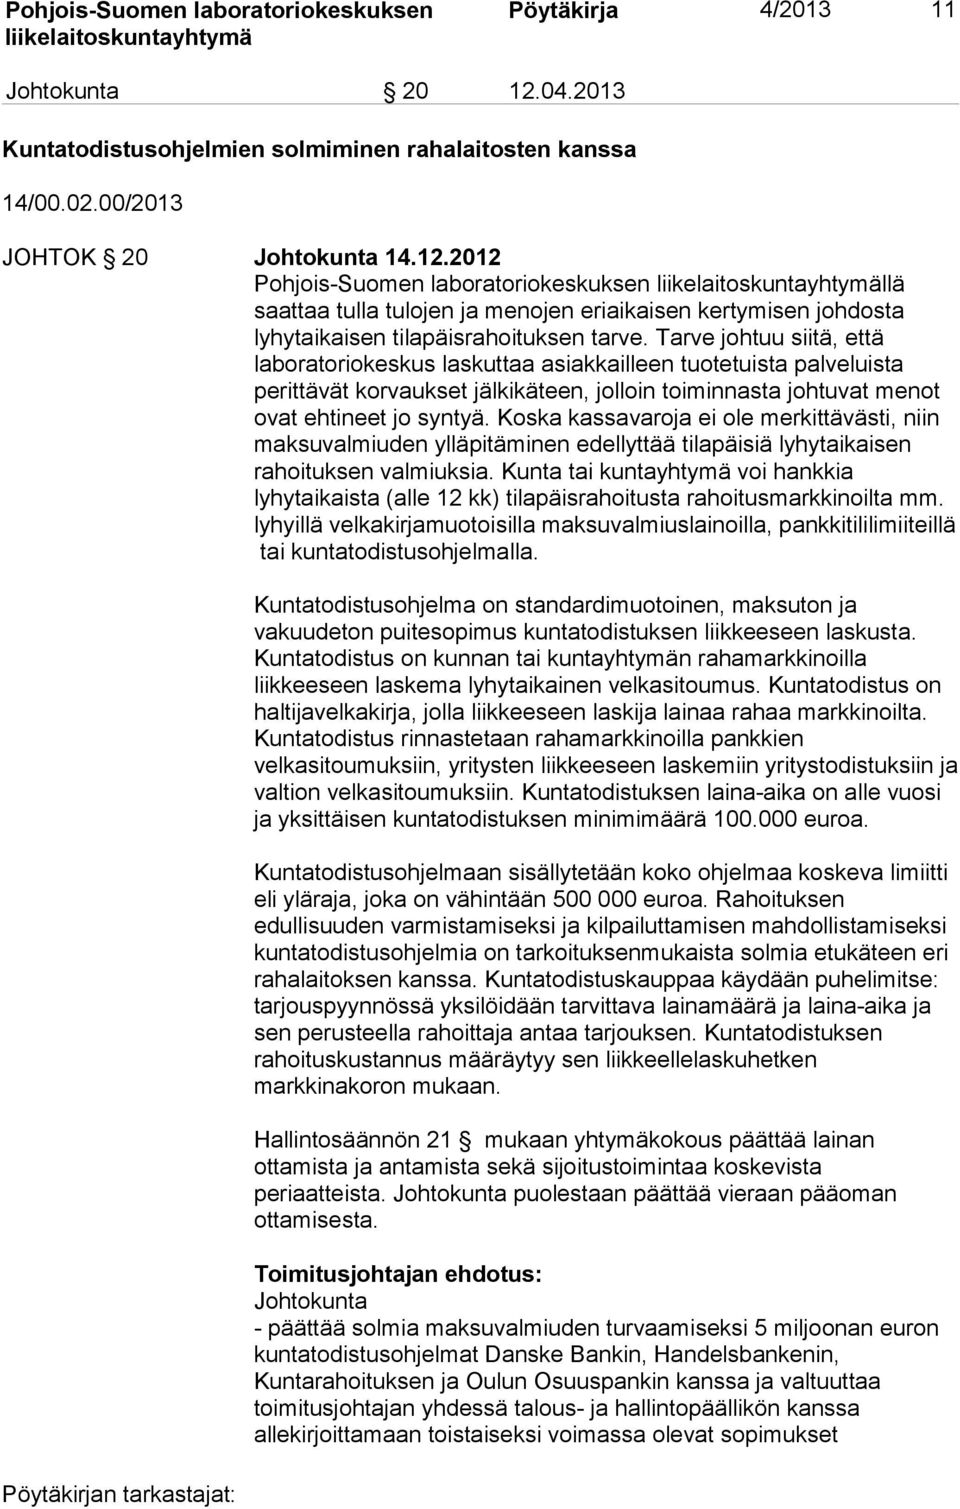 2012 Pohjois-Suomen laboratoriokeskuksen llä saattaa tulla tulojen ja menojen eriaikaisen kertymisen johdosta lyhytaikaisen tilapäisrahoituksen tarve.